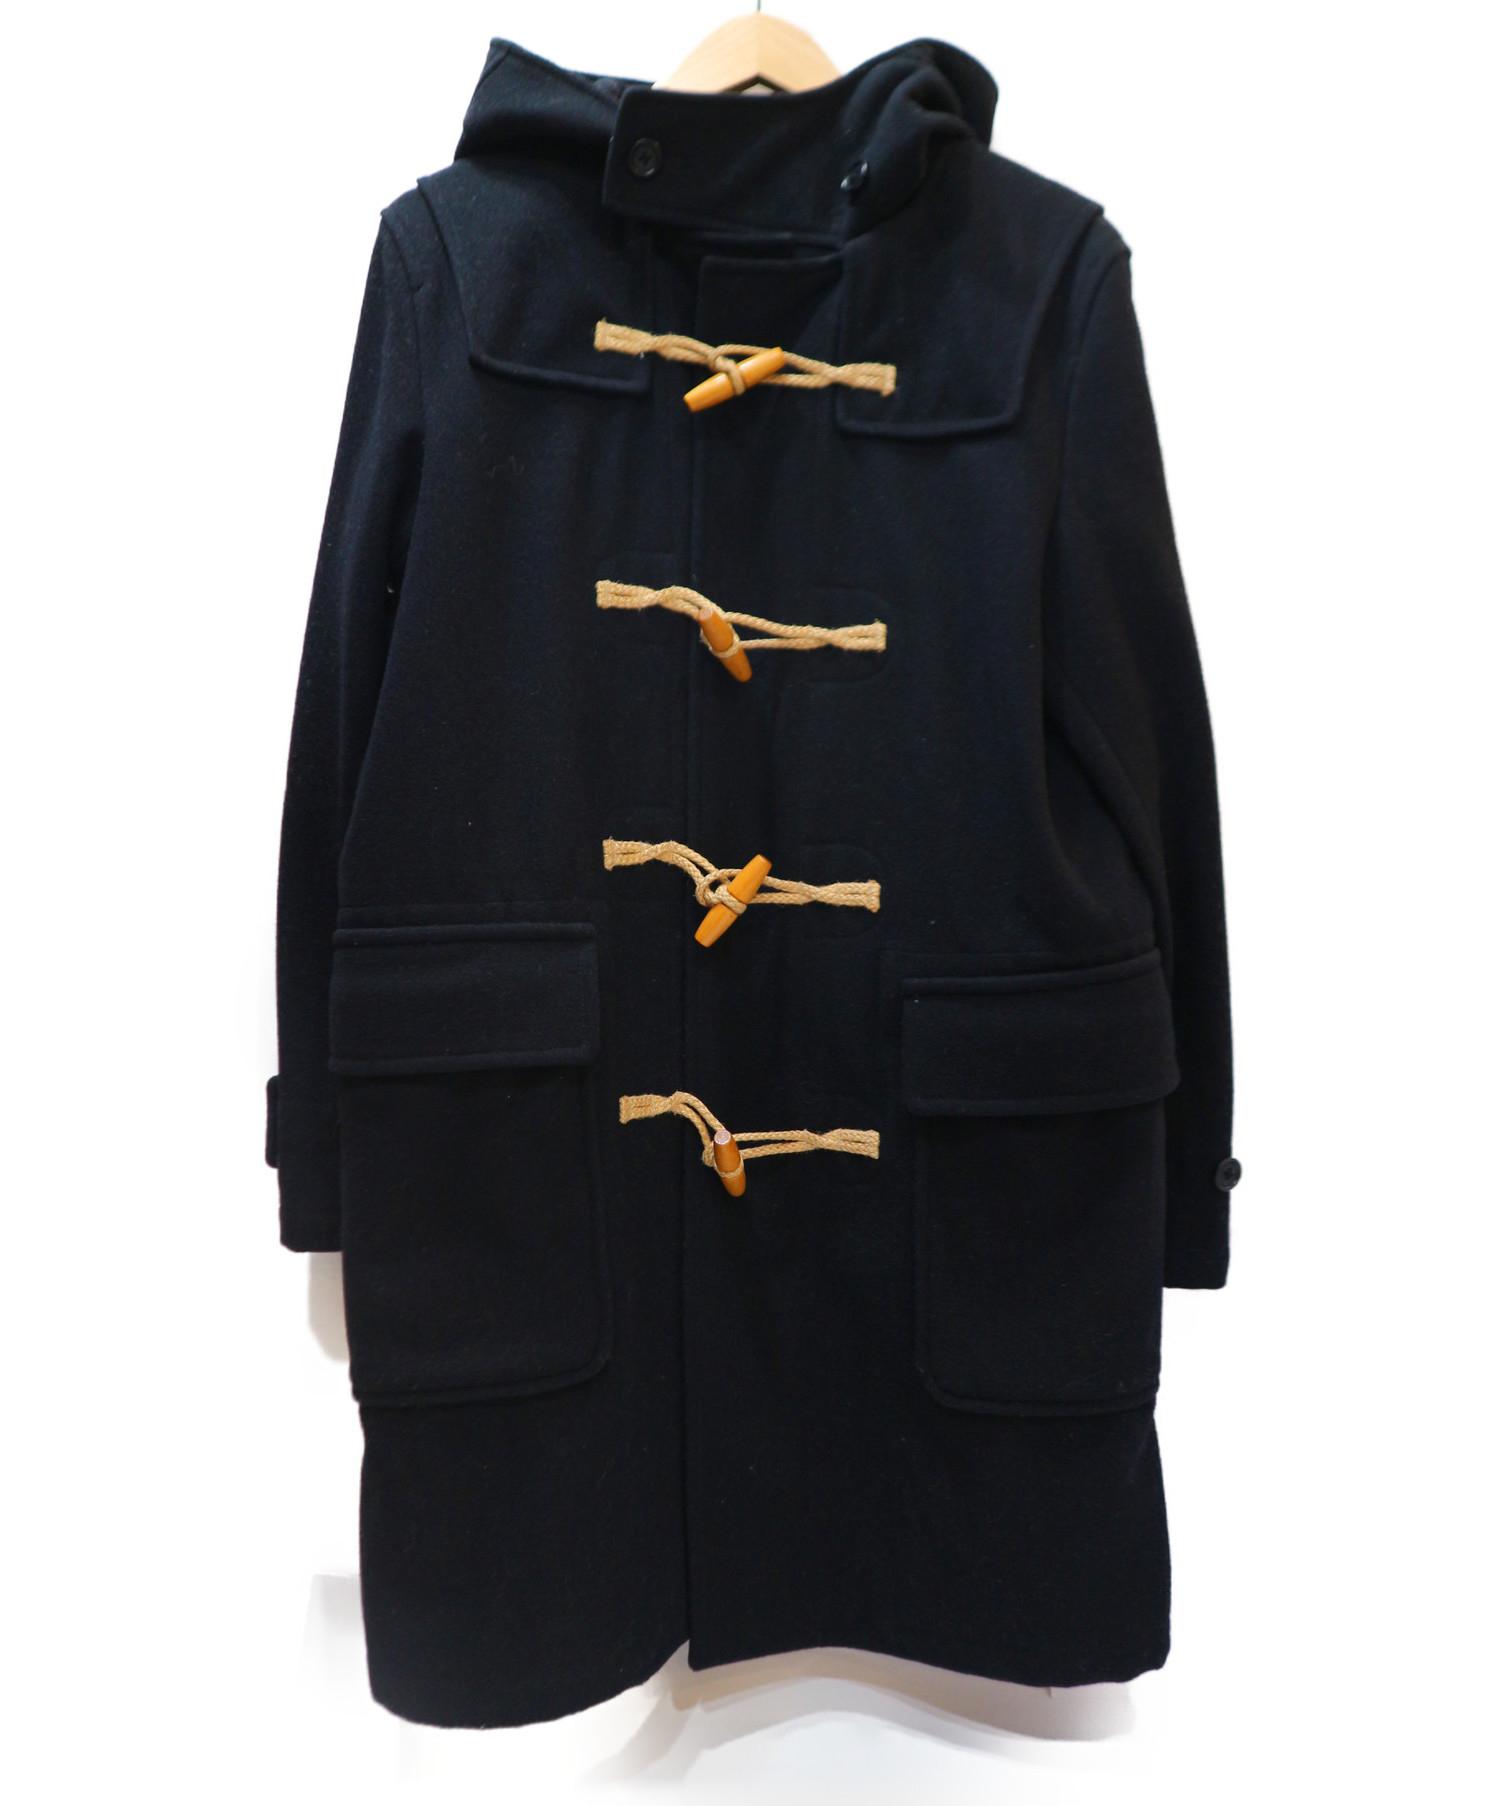 満点のジャケット/アウターカテゴリ MARGARET ダッフルコートの通販 by としきんぐ's shop